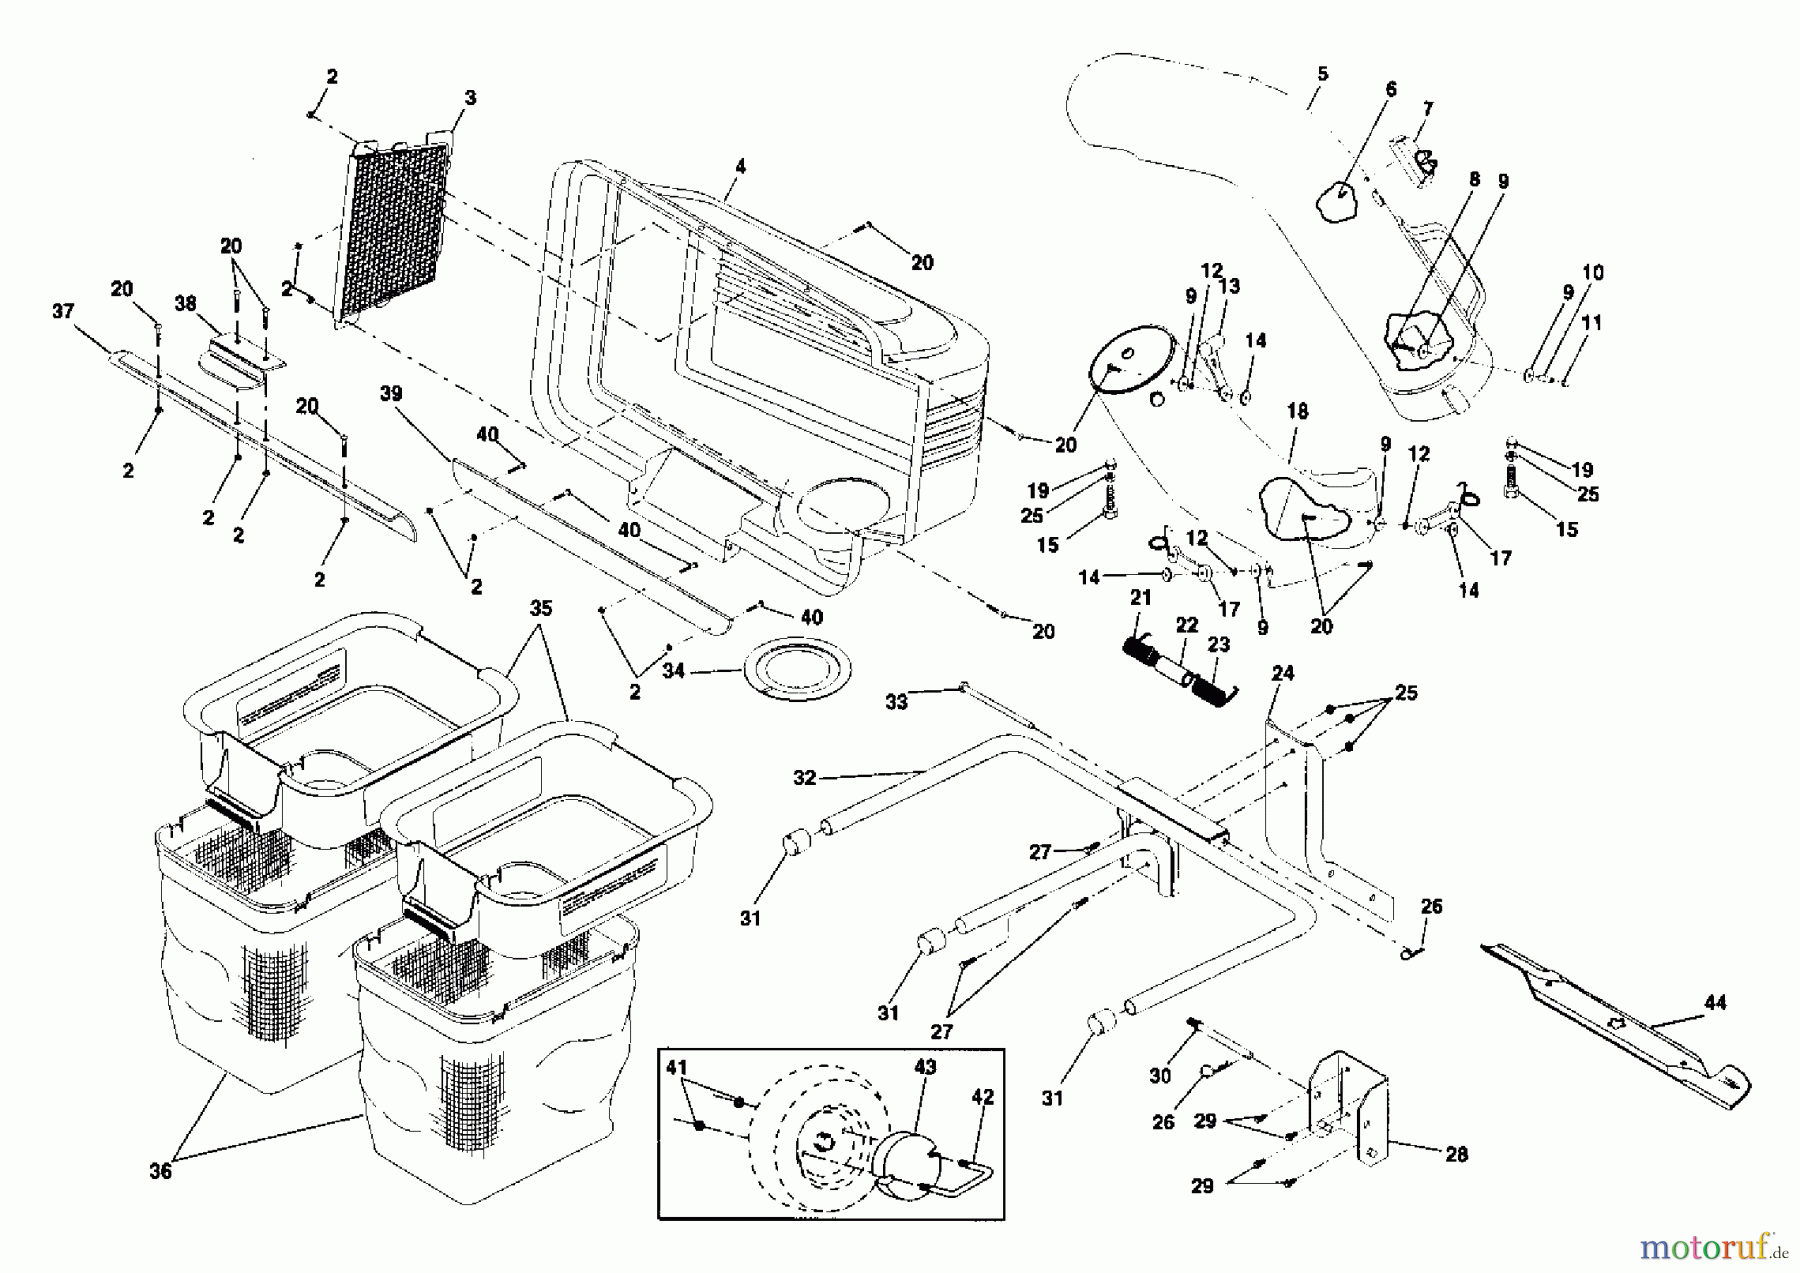  Jonsered Rasen  und Garten Traktoren LR12 (954003411) - Jonsered 36